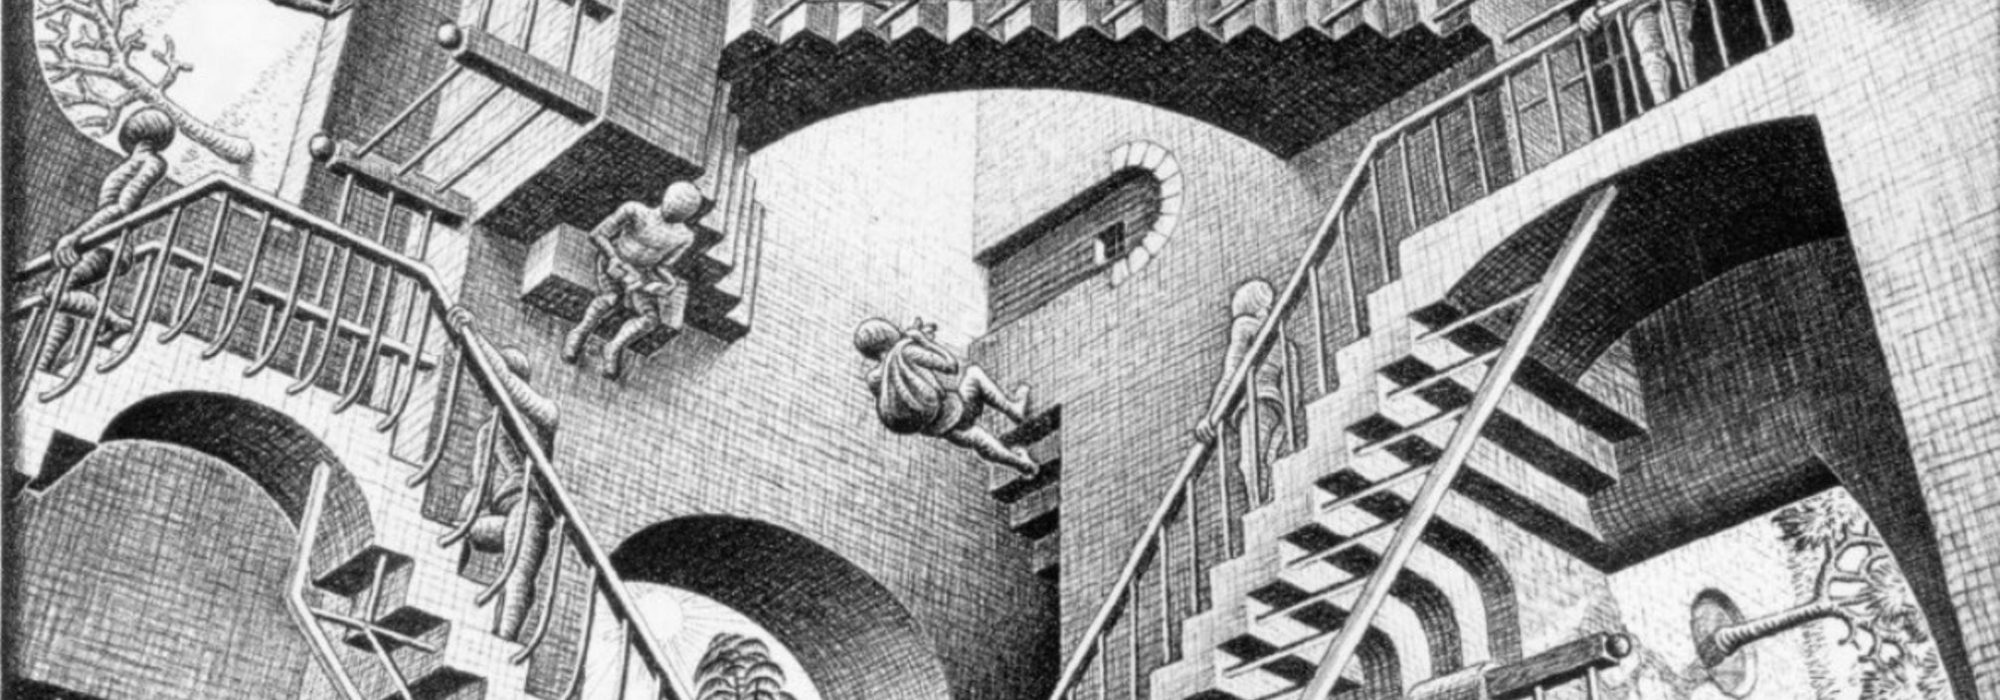 Imagem: Relatividade (Escher, 1953)